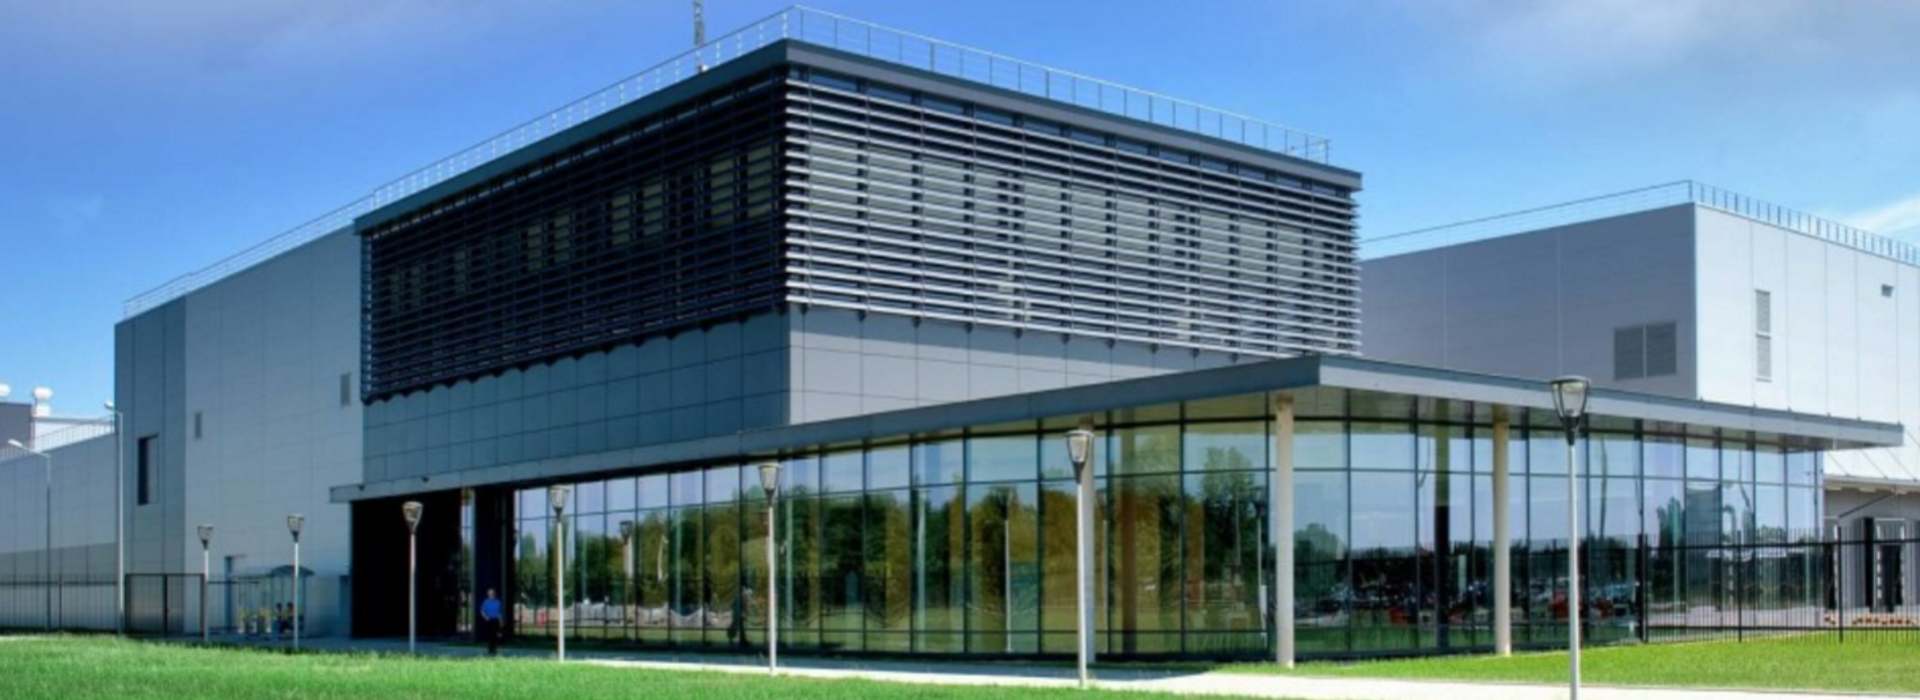 Hale magazynowe Mondelez Services Europe w Skarbimierzu Osiedle posiadają systemy wentylacyjno klimatyzacyjne